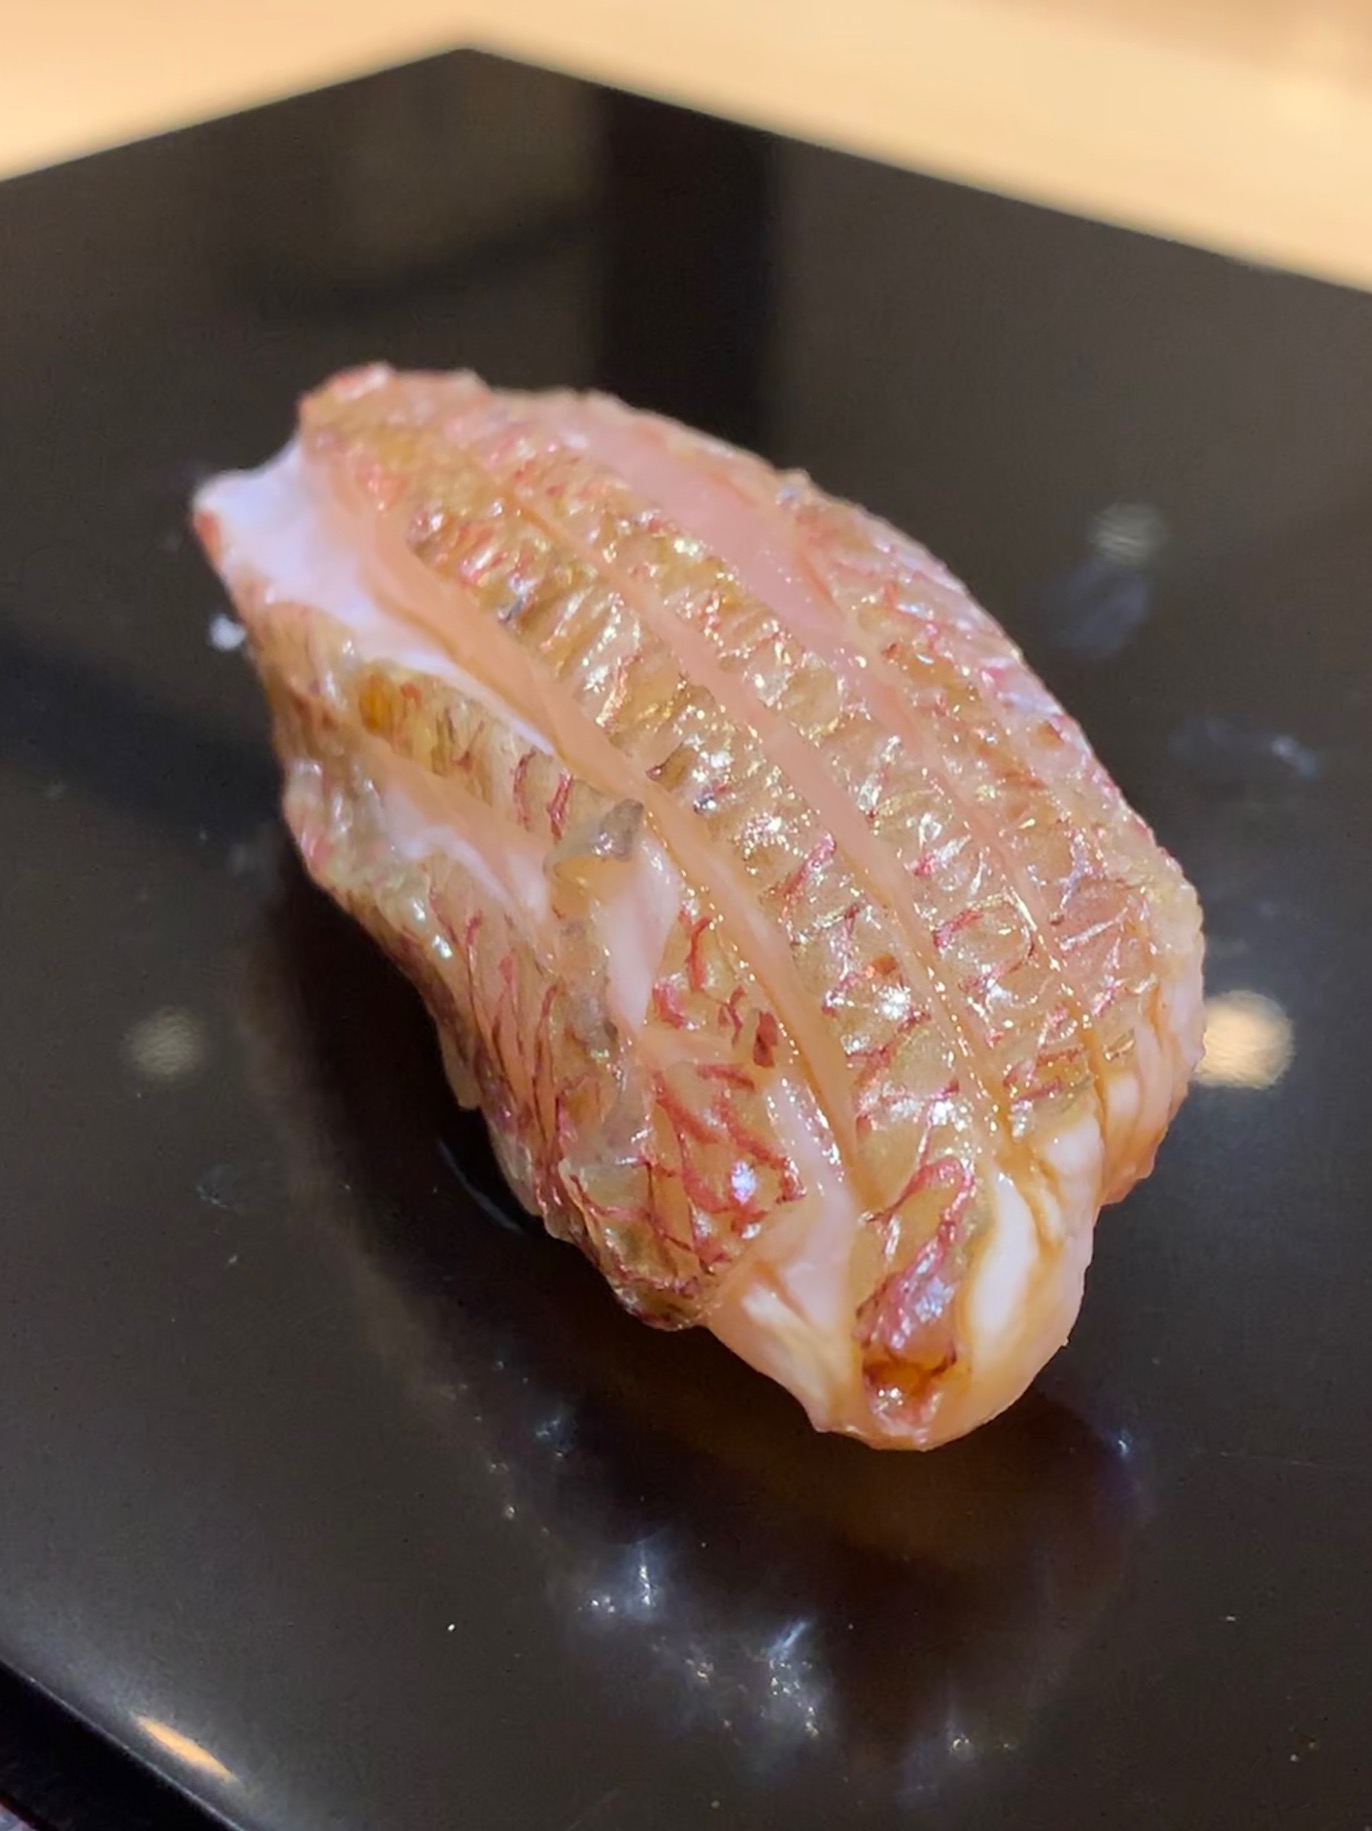 perfectly sized sushi bites at Sushi Issey, Kanazawa